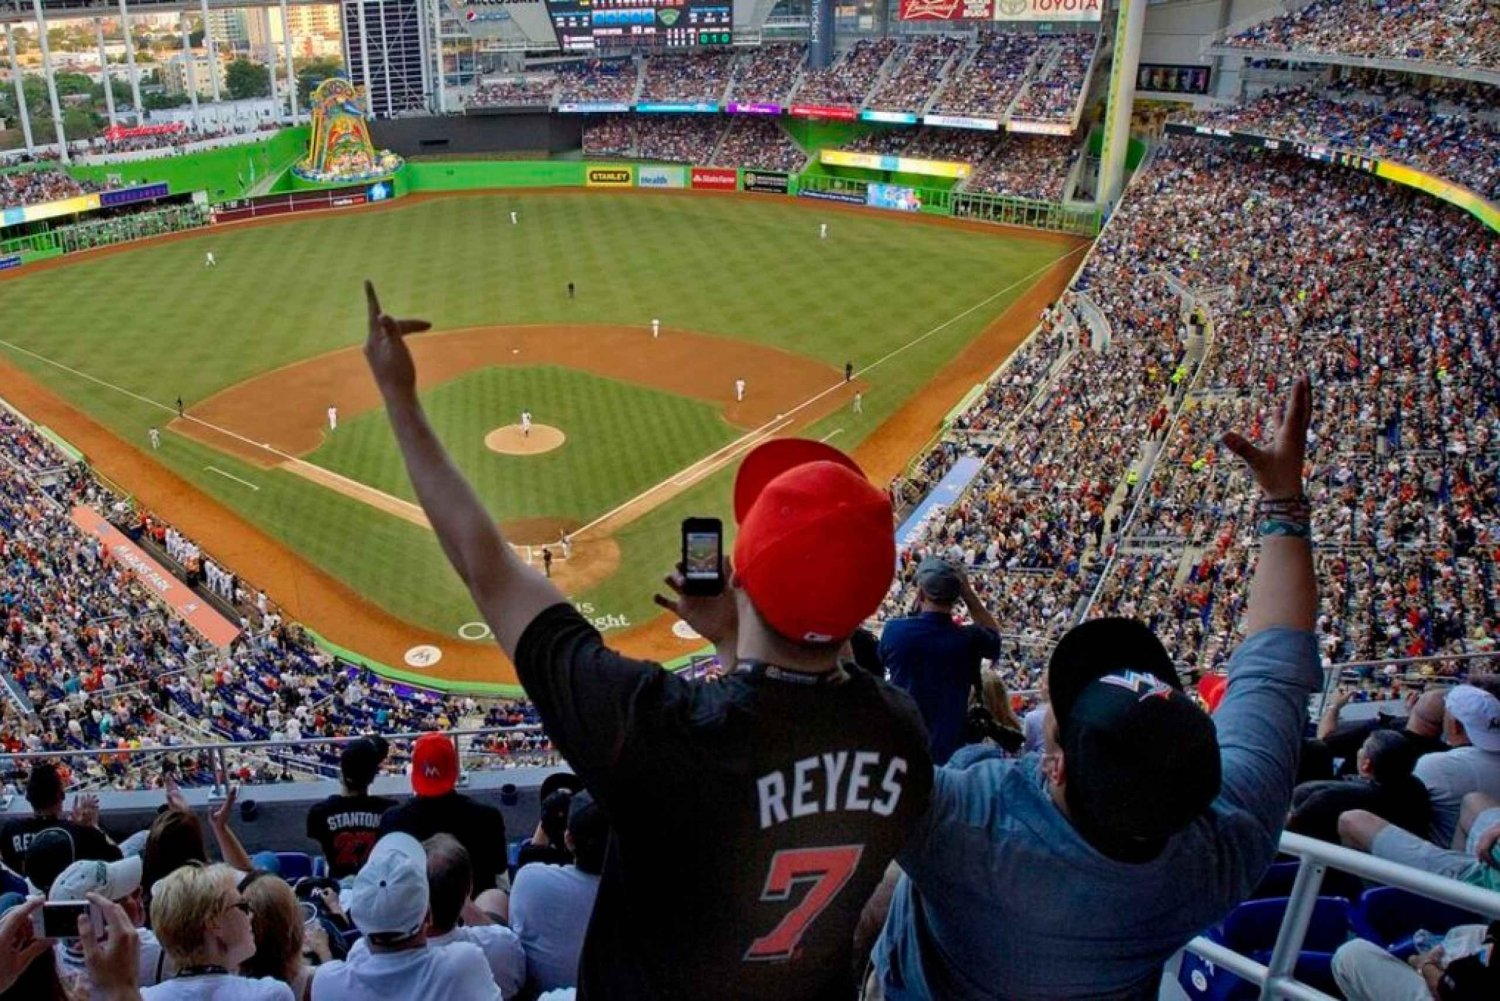 Miami: Ingresso para o jogo de beisebol do Miami Marlins no loandepot Park